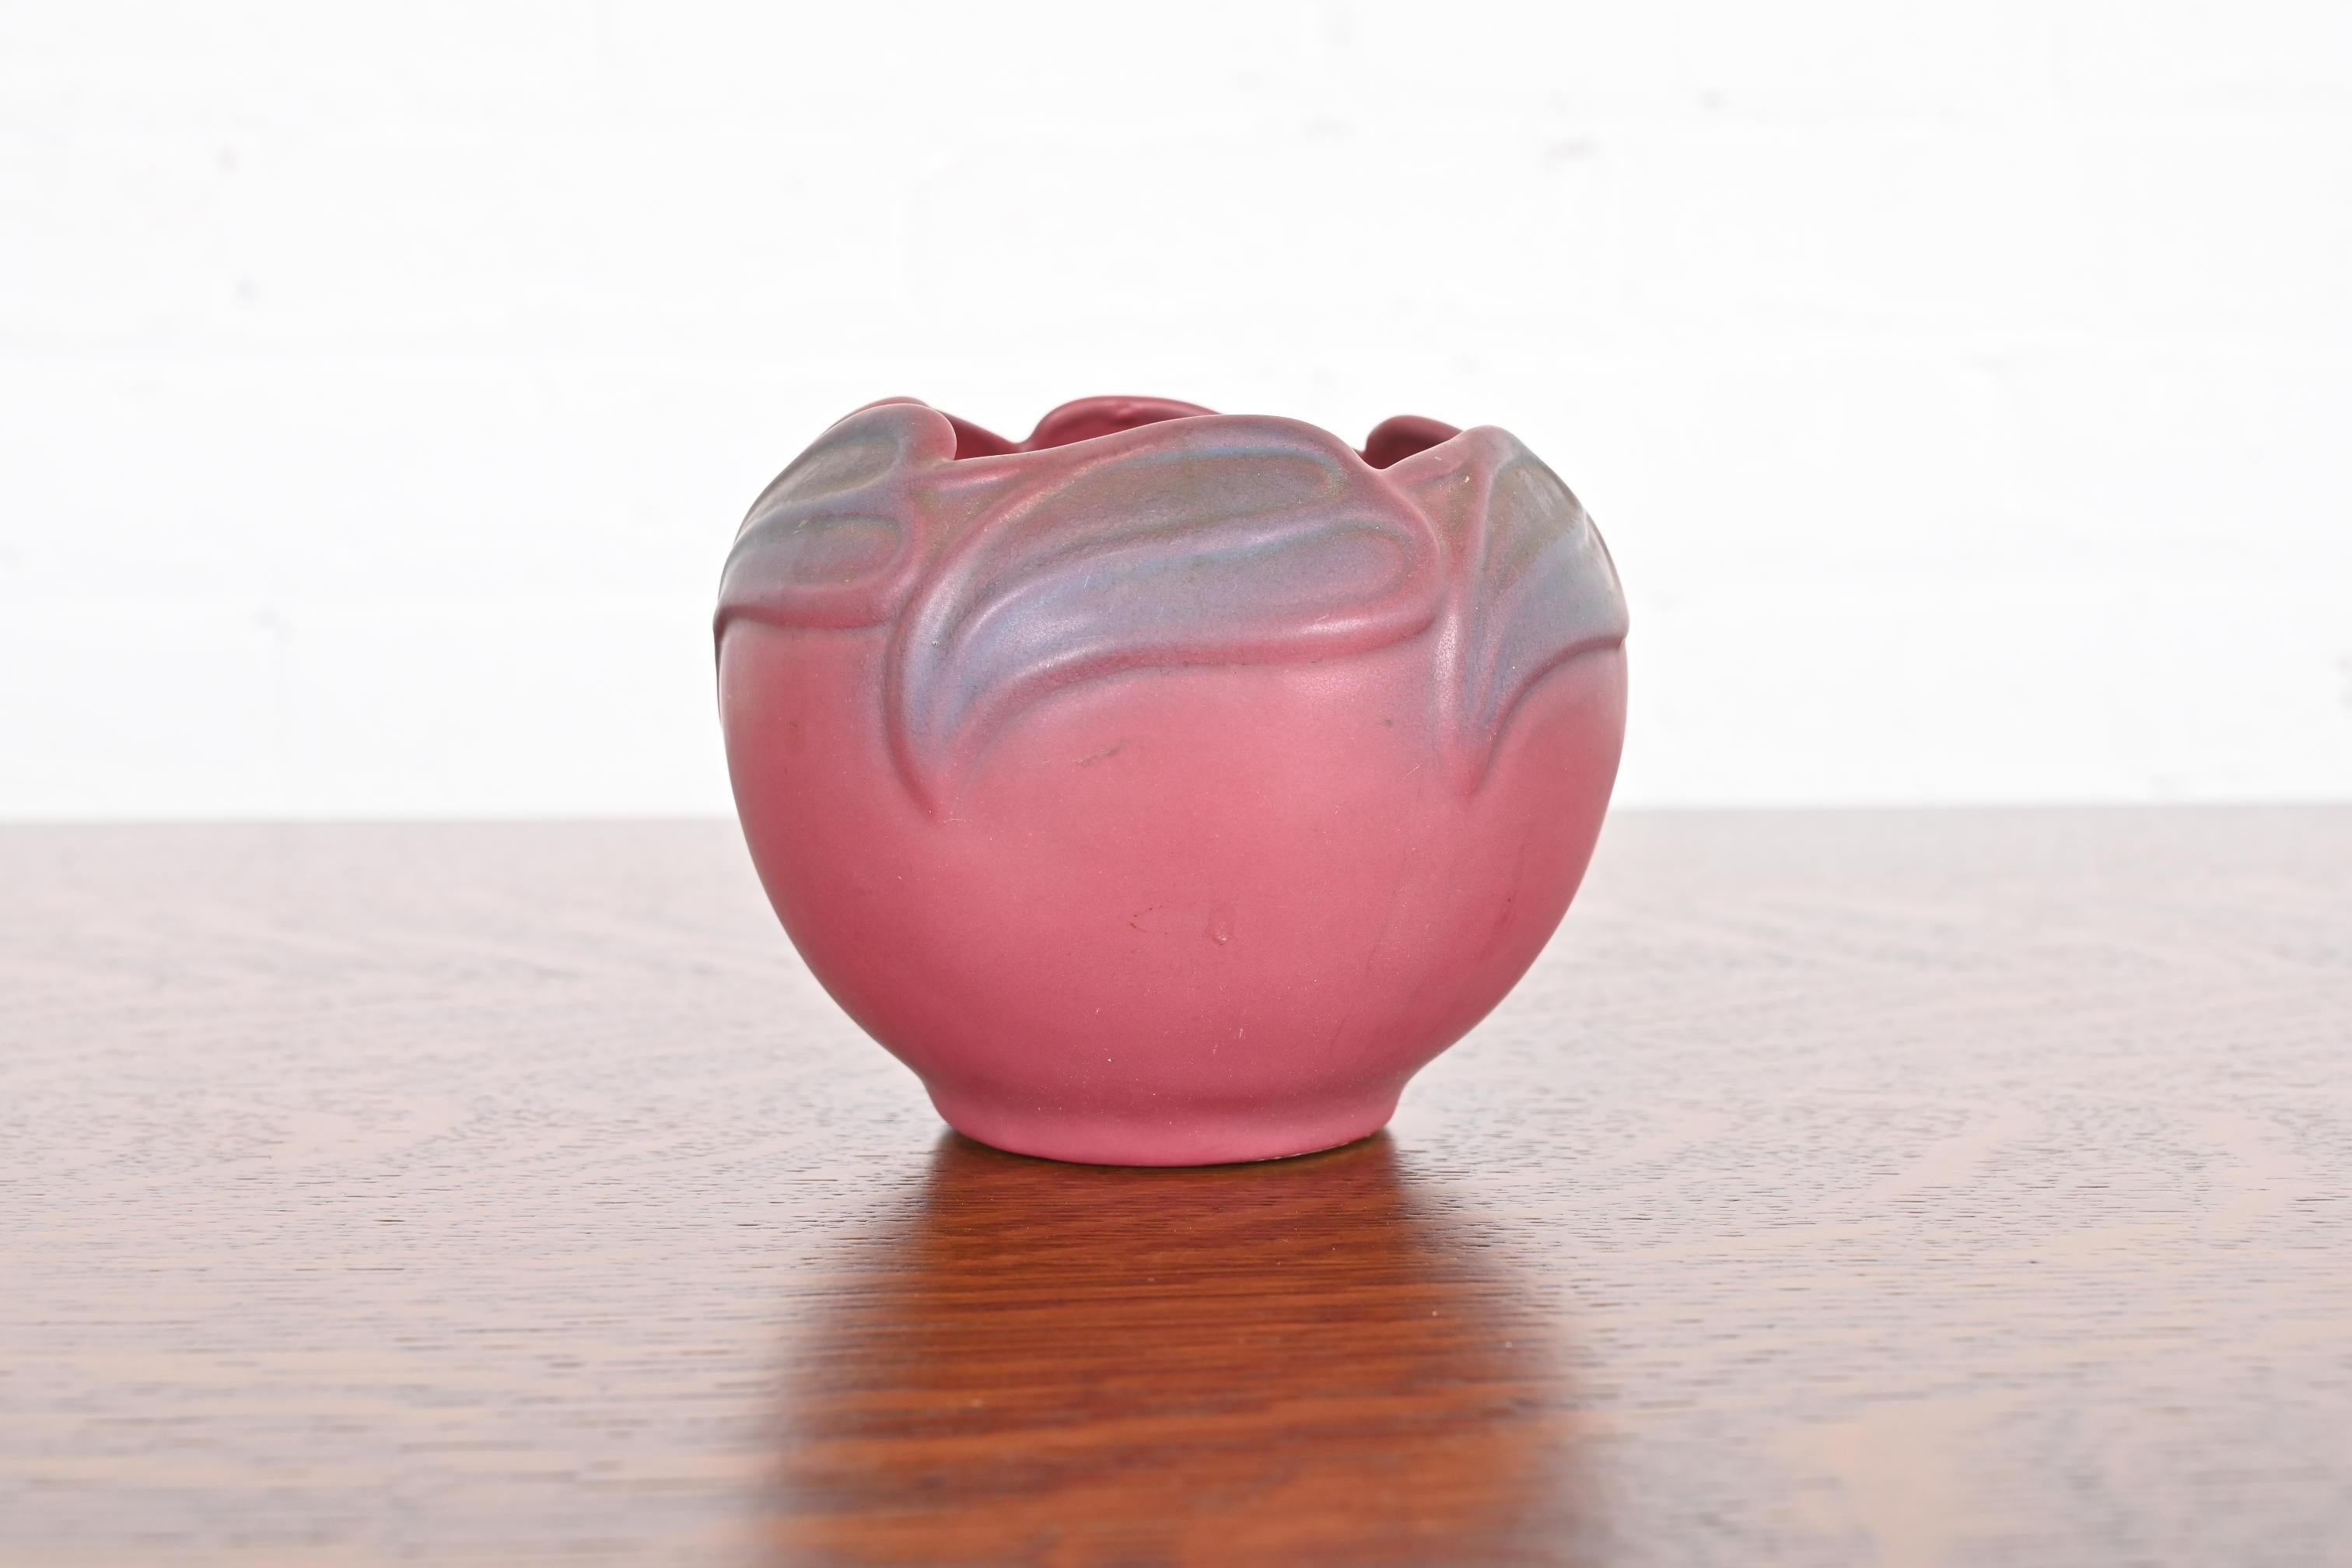 Eine wunderschöne Arts & Crafts Zeitraum rosa und lavendel glasierte Keramik Kunst Keramik Vase mit Blumenmotiv

Von Van Briggle (signiert auf der Unterseite)

USA, Anfang 20. Jahrhundert

Maße: 5,13 